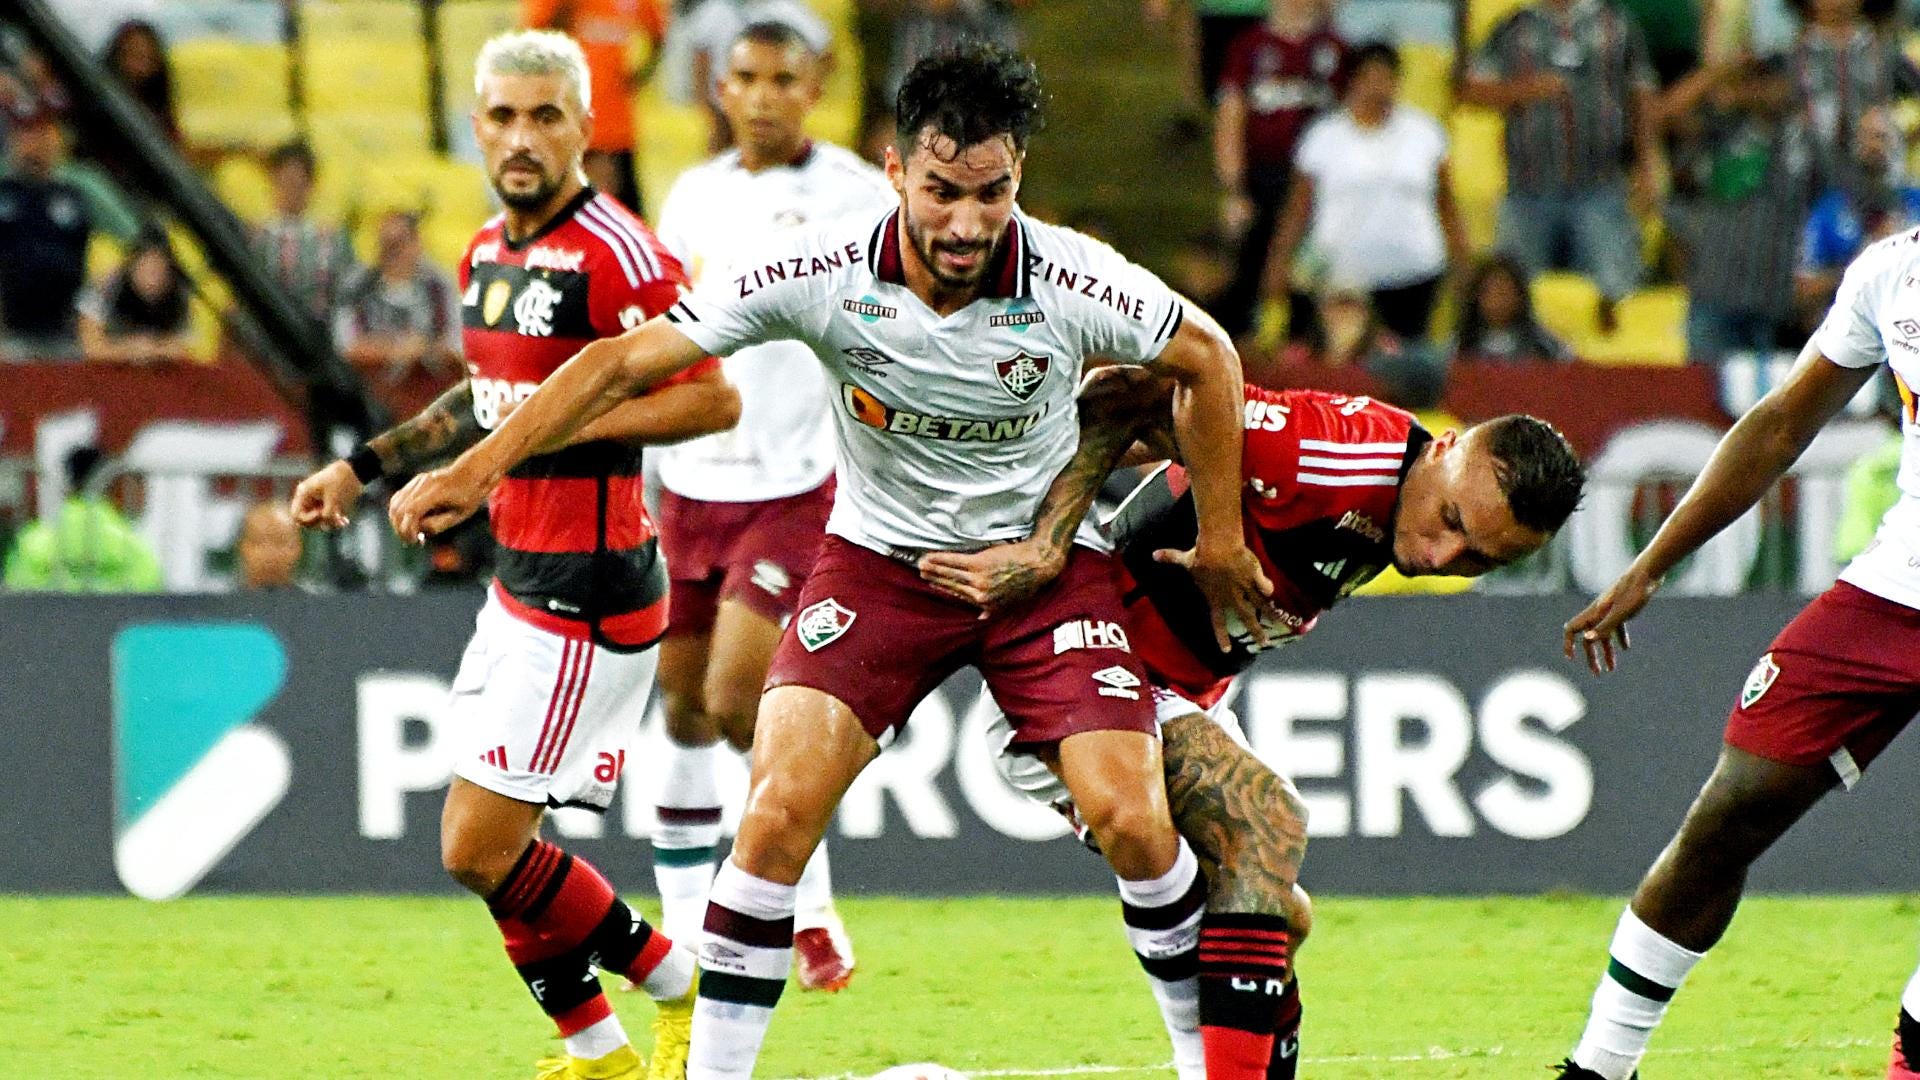 Flamengo x Fluminense: onde assistir ao vivo, horário e escalações, campeonato carioca